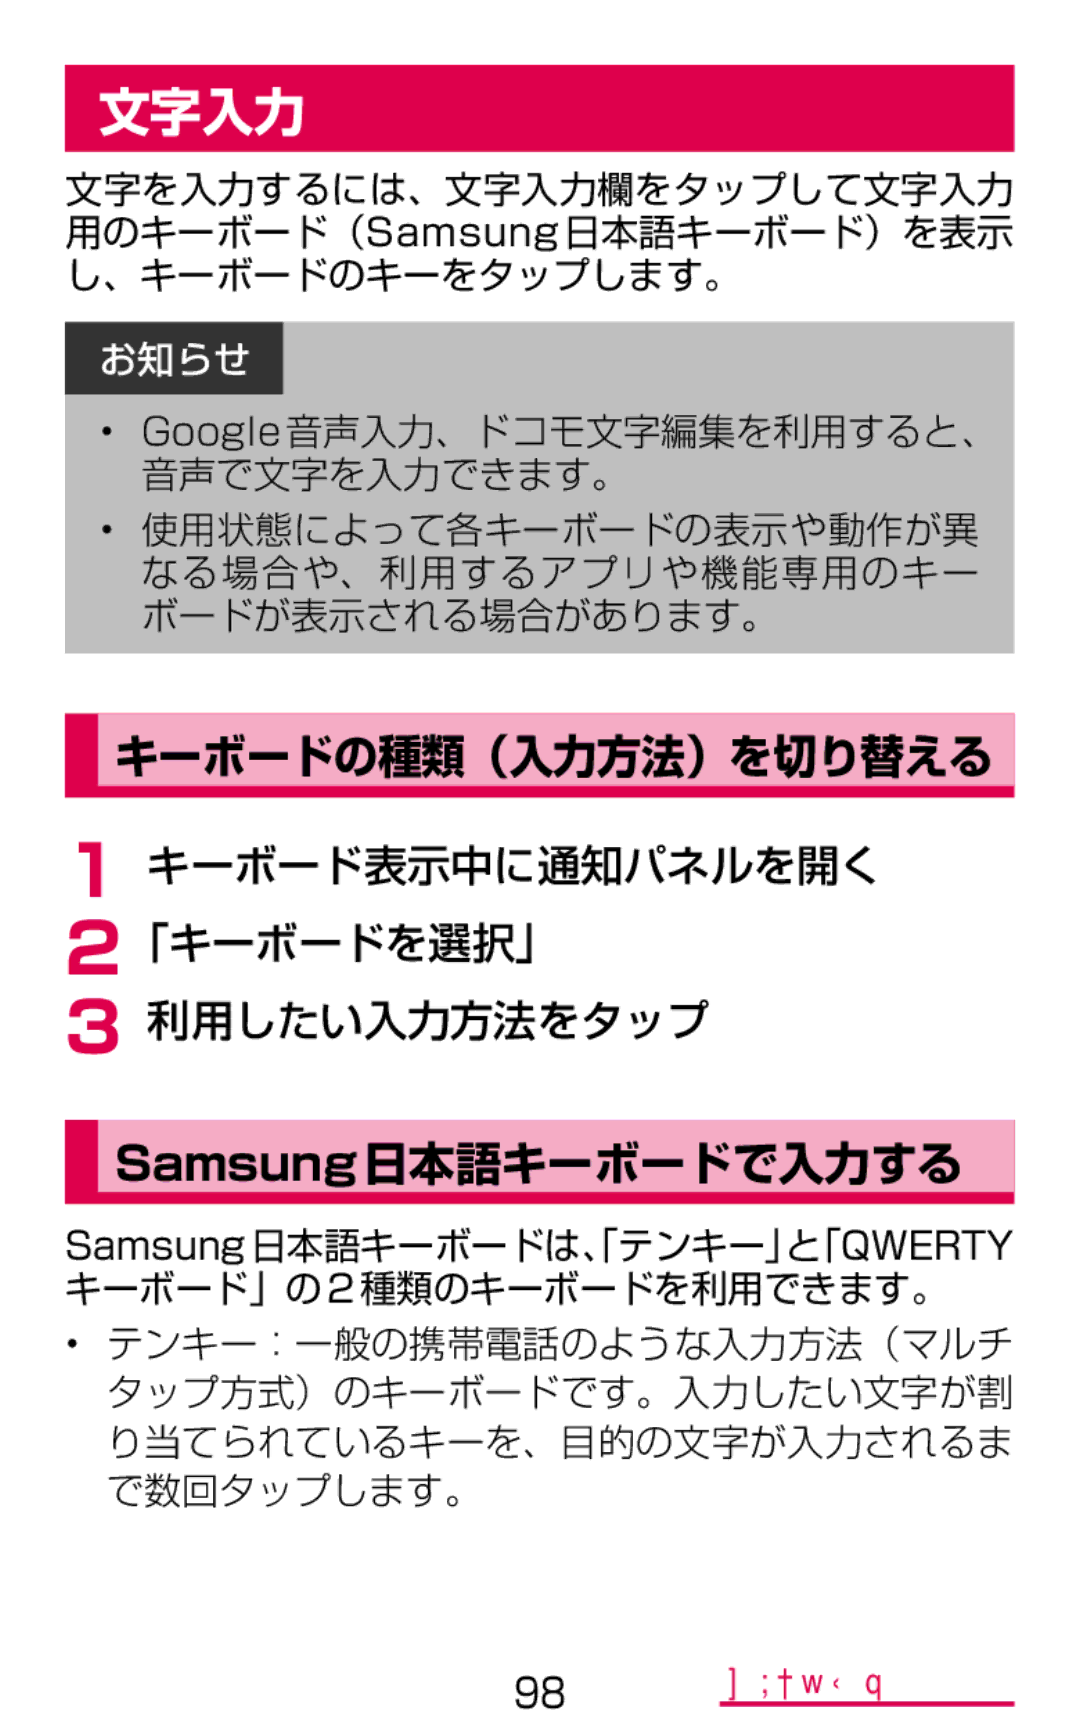 Samsung SM-G900DSIEDCM manual 文字入力, キーボードの種類（入力方法）を切り替える, Samsung日本語キーボードで入力する, キーボード表示中に通知パネルを開く 2「キーボードを選択」 利用したい入力方法をタップ 